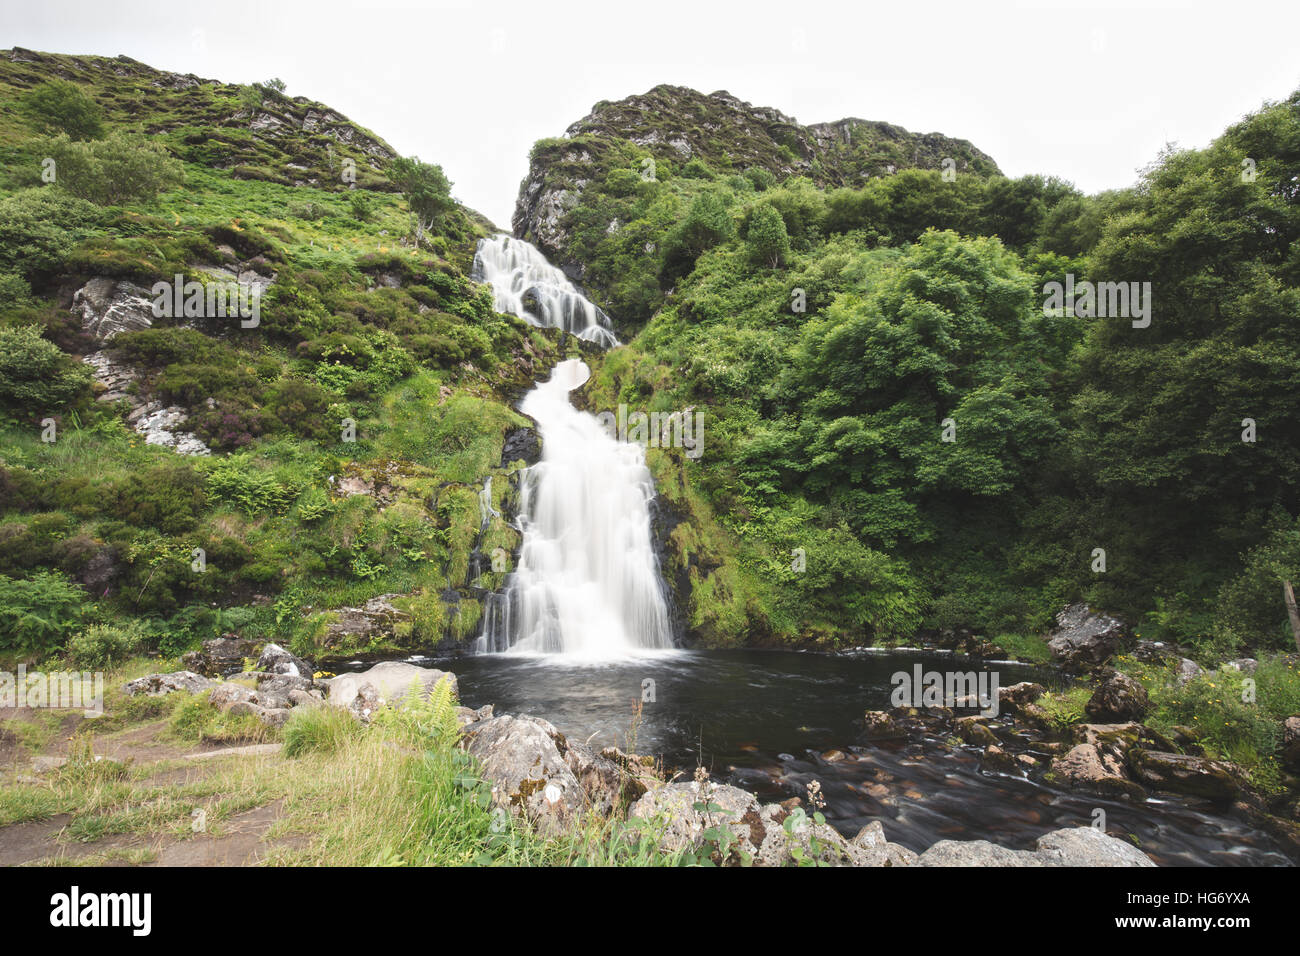 Assarancagh Cascade, Adara. Le comté de Donegal, Irlande / Assarnacally Waterfall Banque D'Images